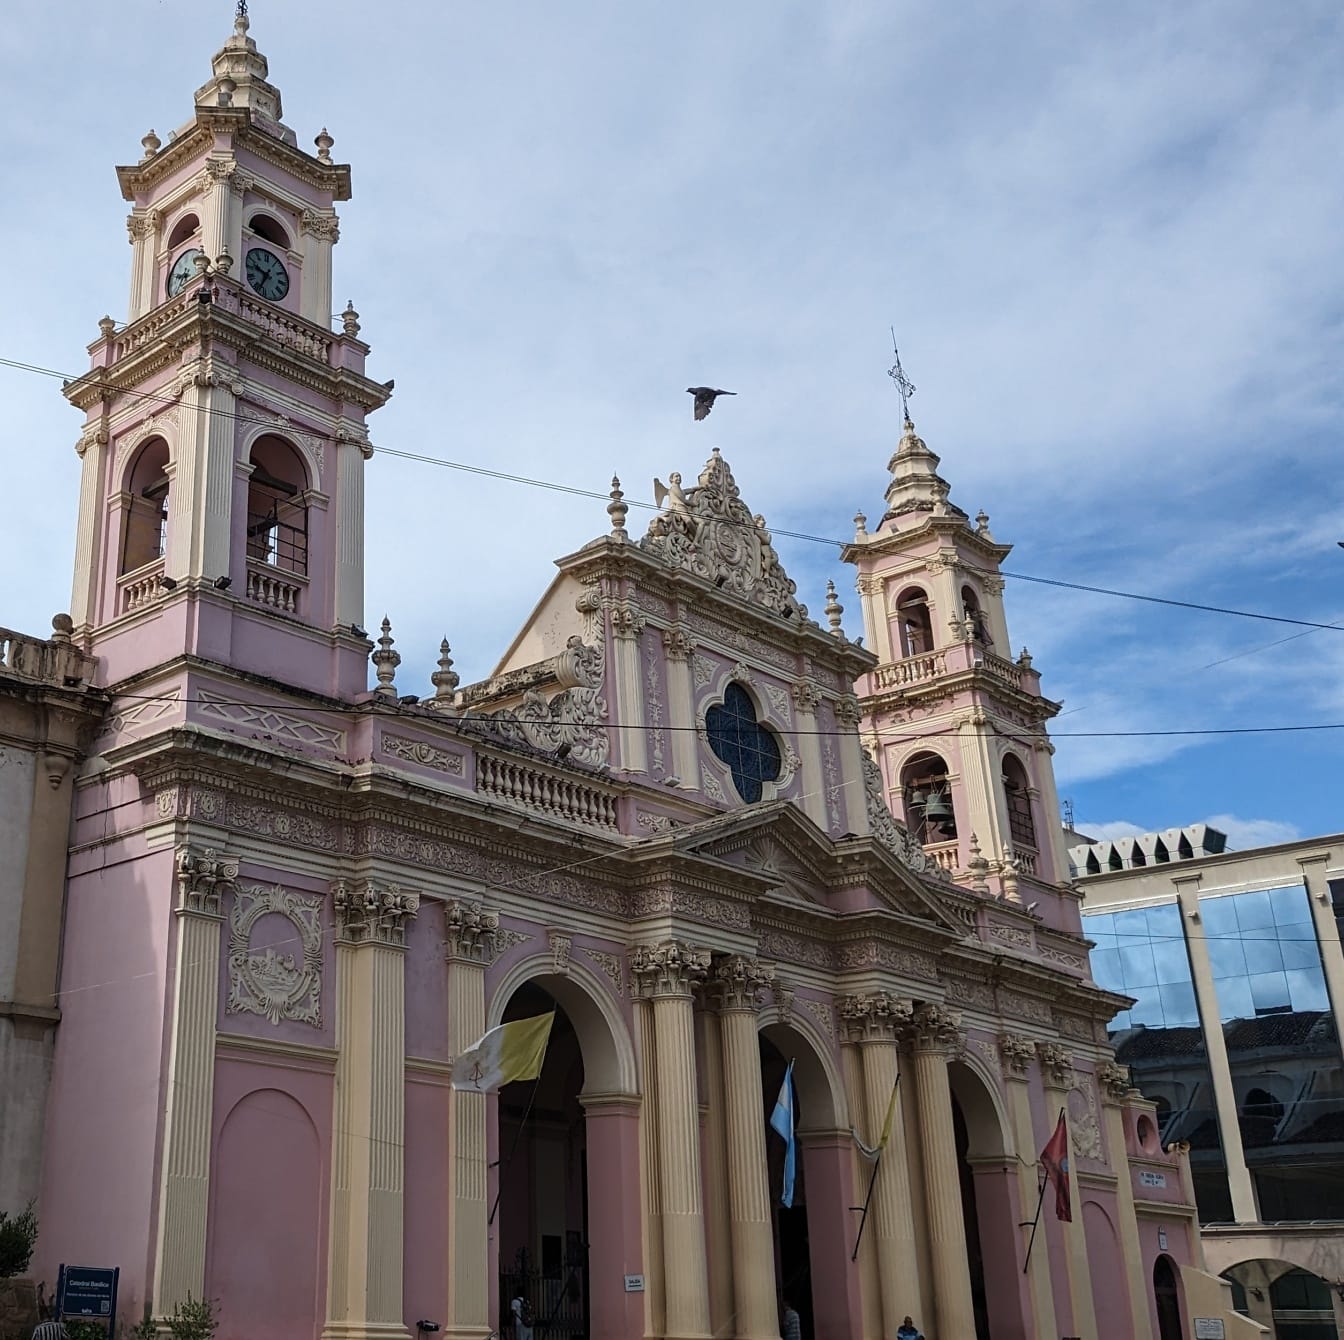 Bazylika katedralna w Salcie w Argentynie w kolonialnym stylu architektonicznym z różowawym kolorem na ścianach